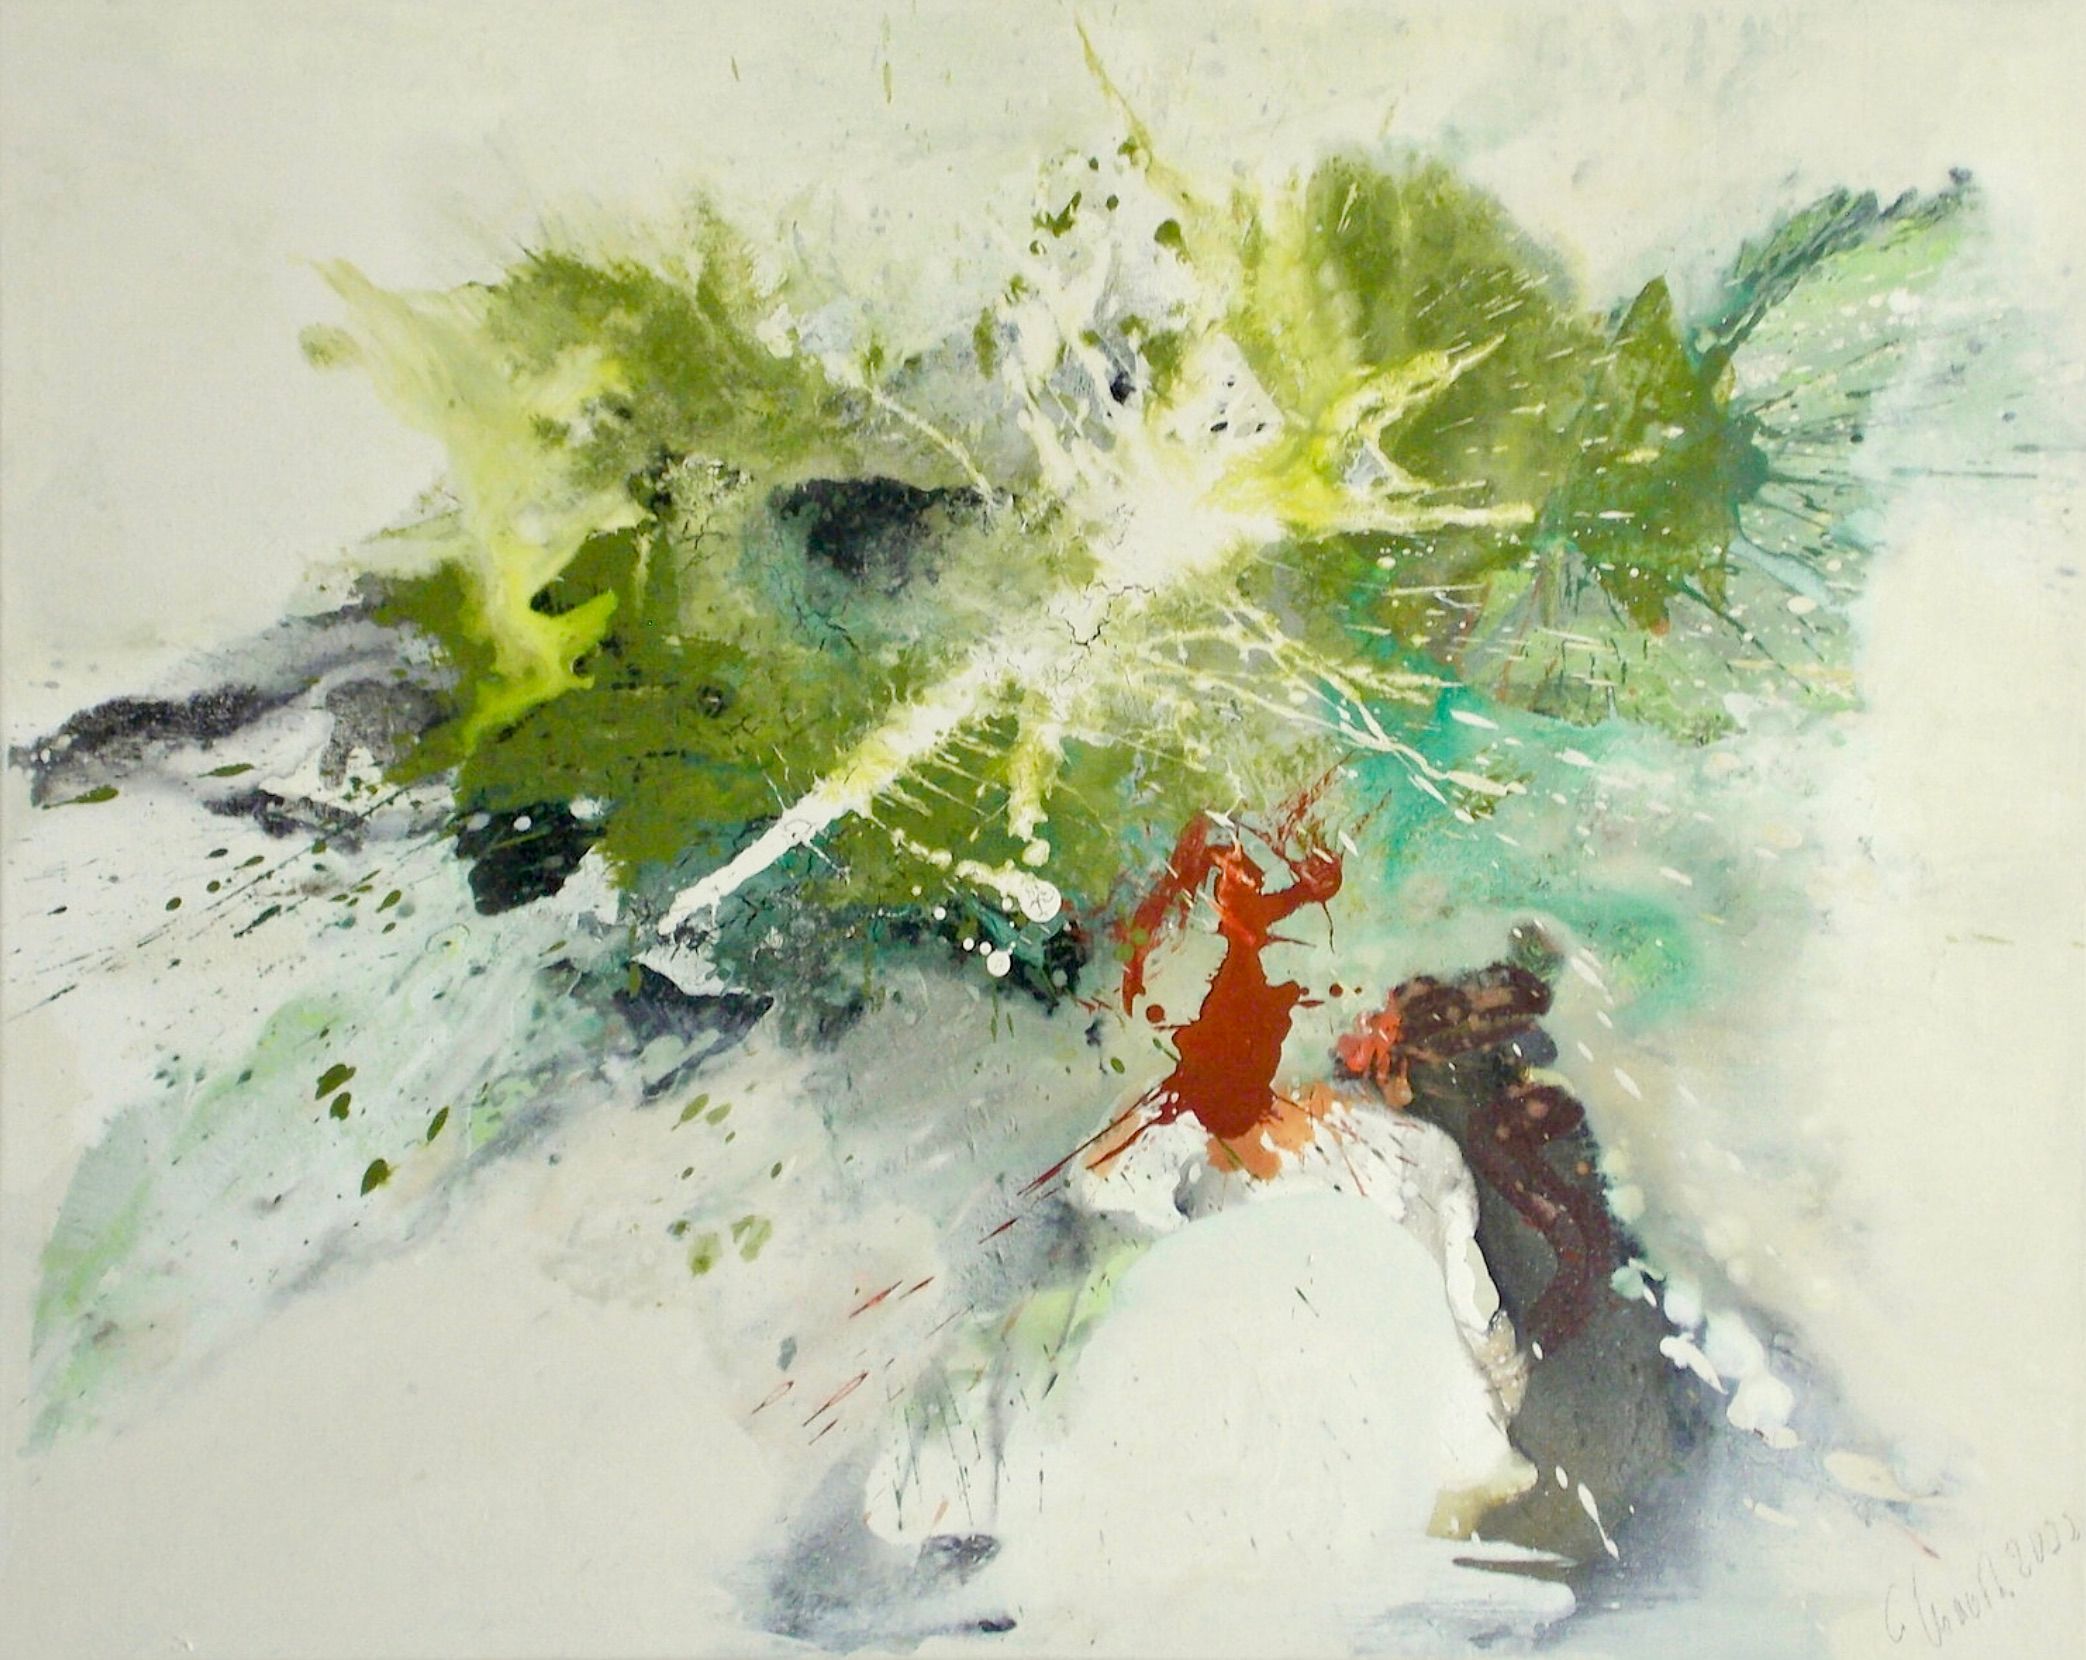 在克里斯塔-哈克的《渴望春天》这幅表现主义、抽象、色彩丰富的画作中，绿色、绿松石、米色和红色占据了主导地位。